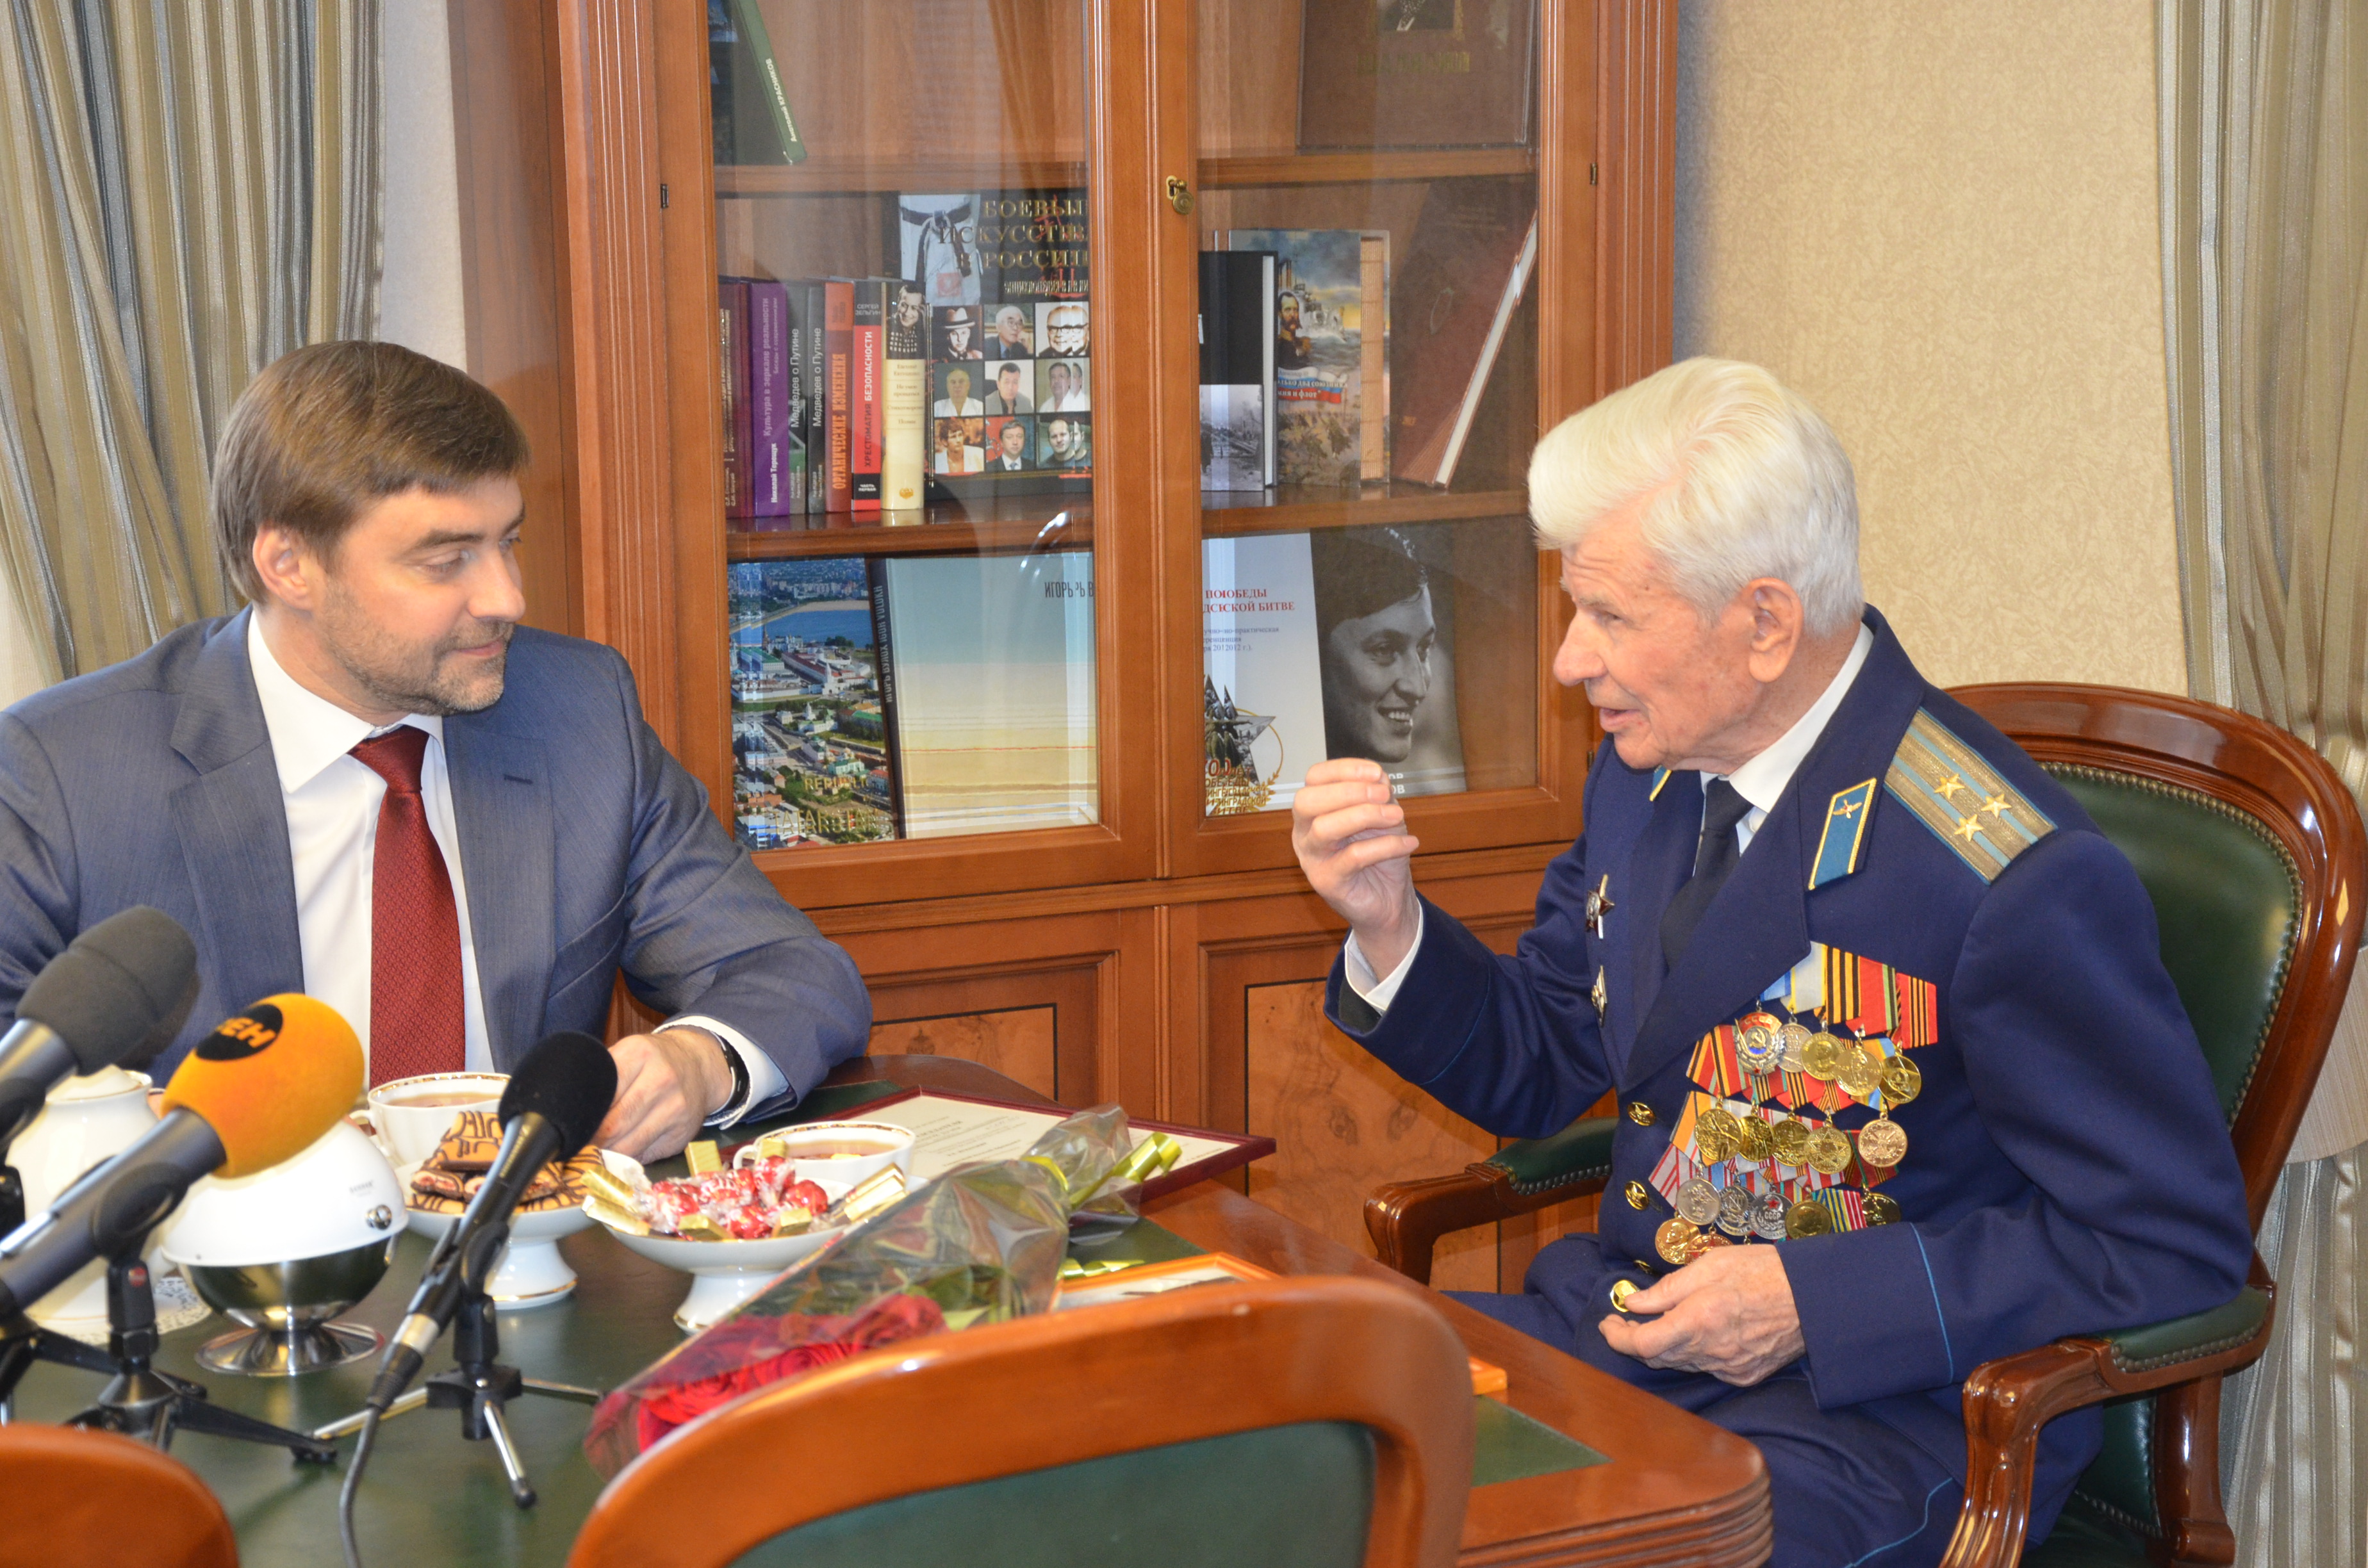  Сергей Железняк получил уникальную фотографию Гагарина  - фото 2